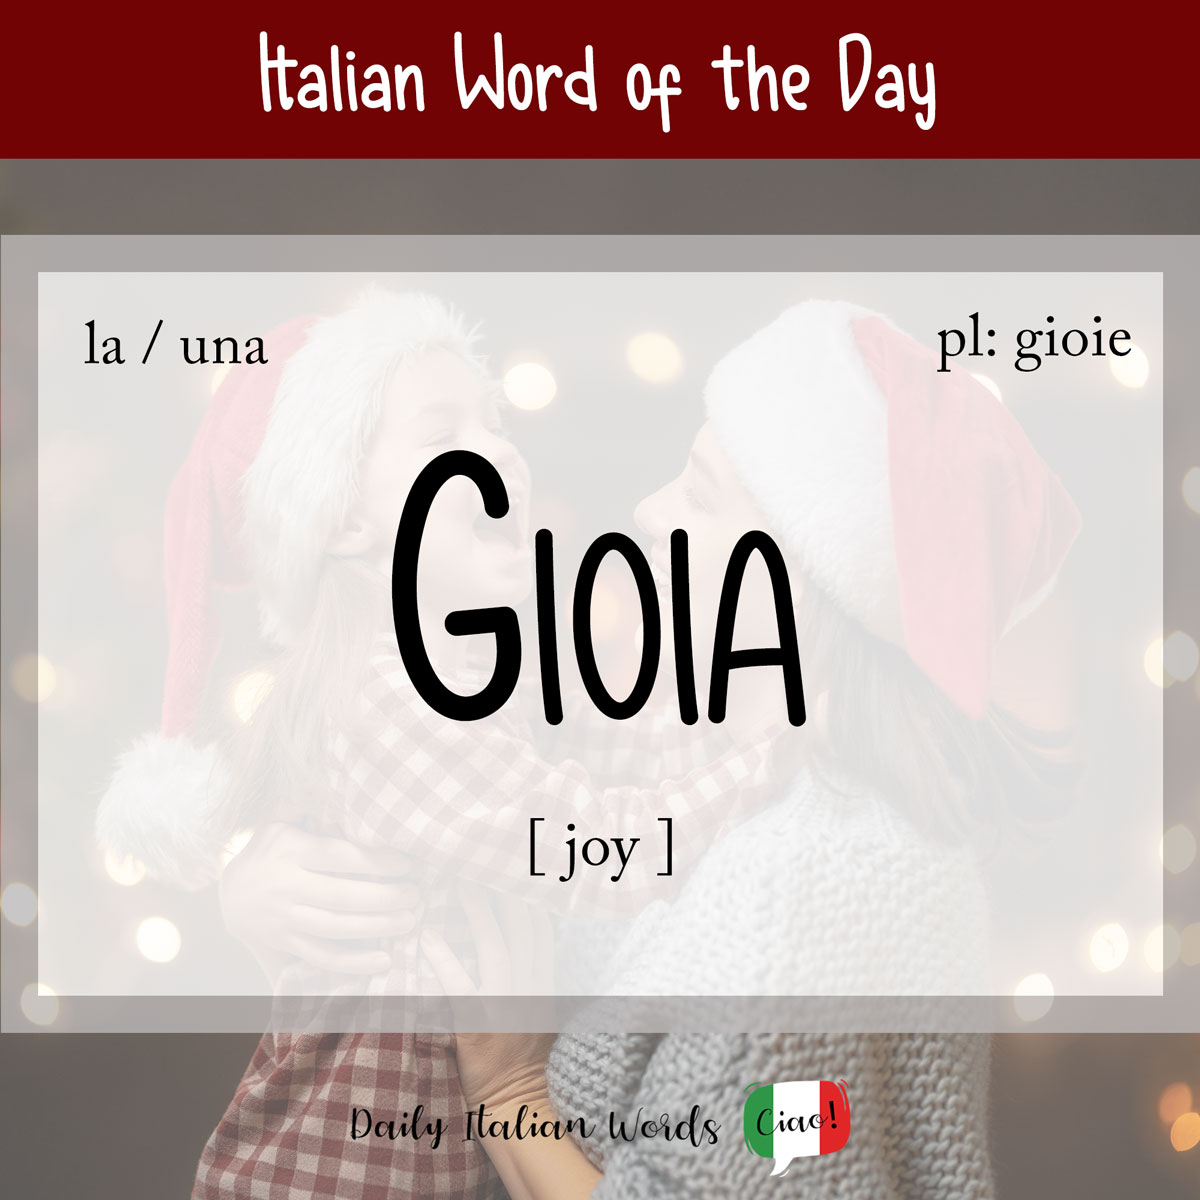 Italian Phrase of the Day: Gioia (pleasure)